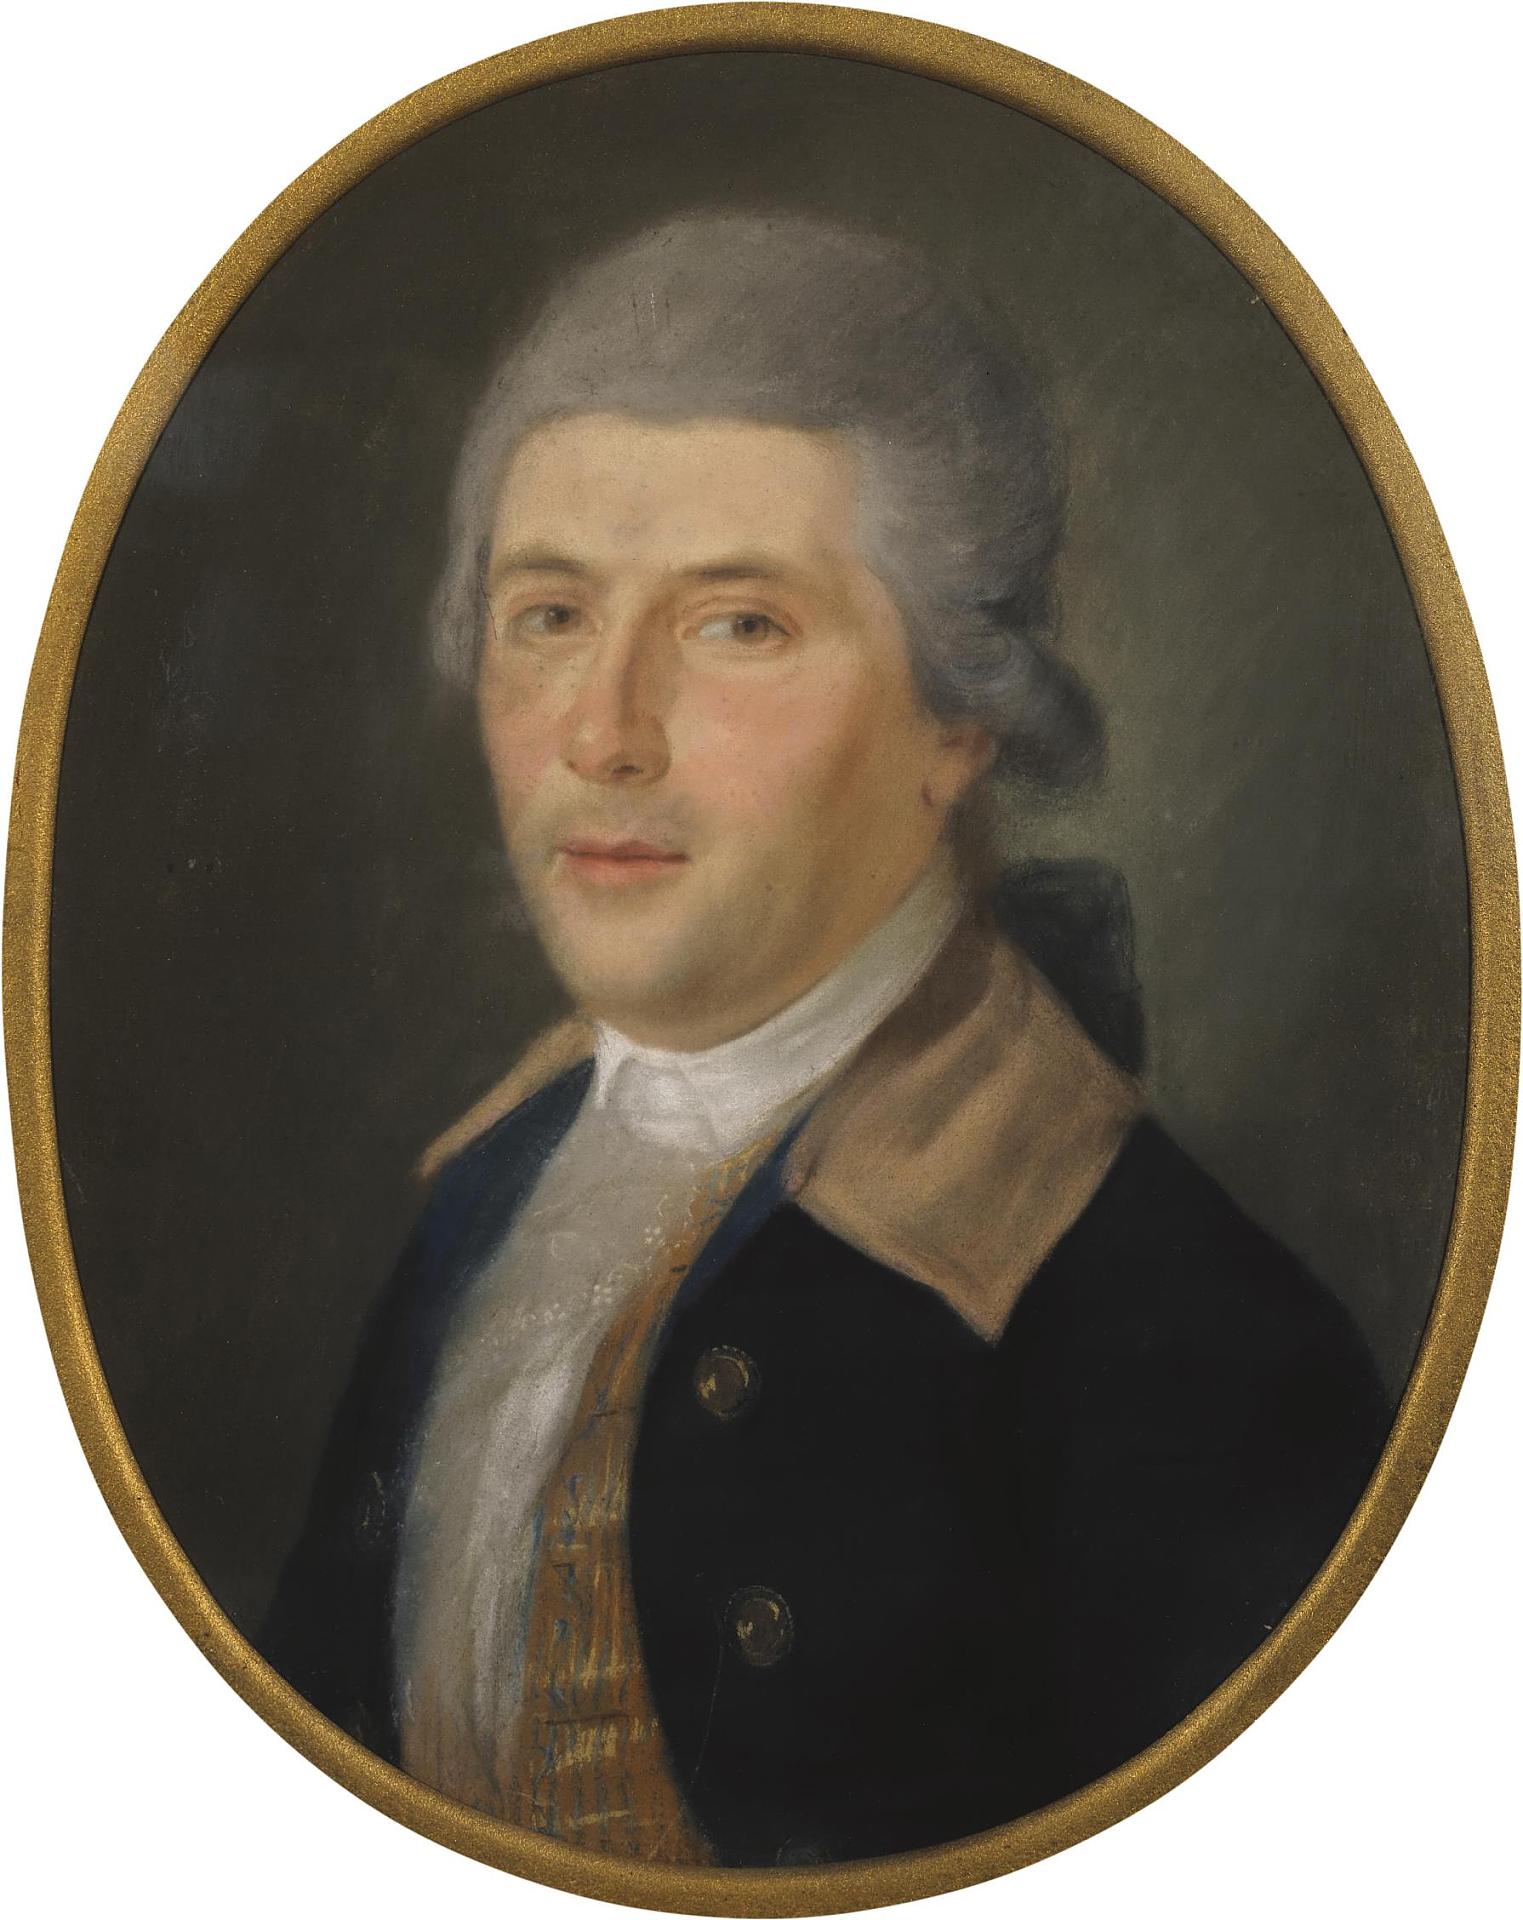 Неизвестный художник, Франция? "Портрет мужчины в пудреном парике". 1780-е. Эрмитаж, Санкт-Петербург.